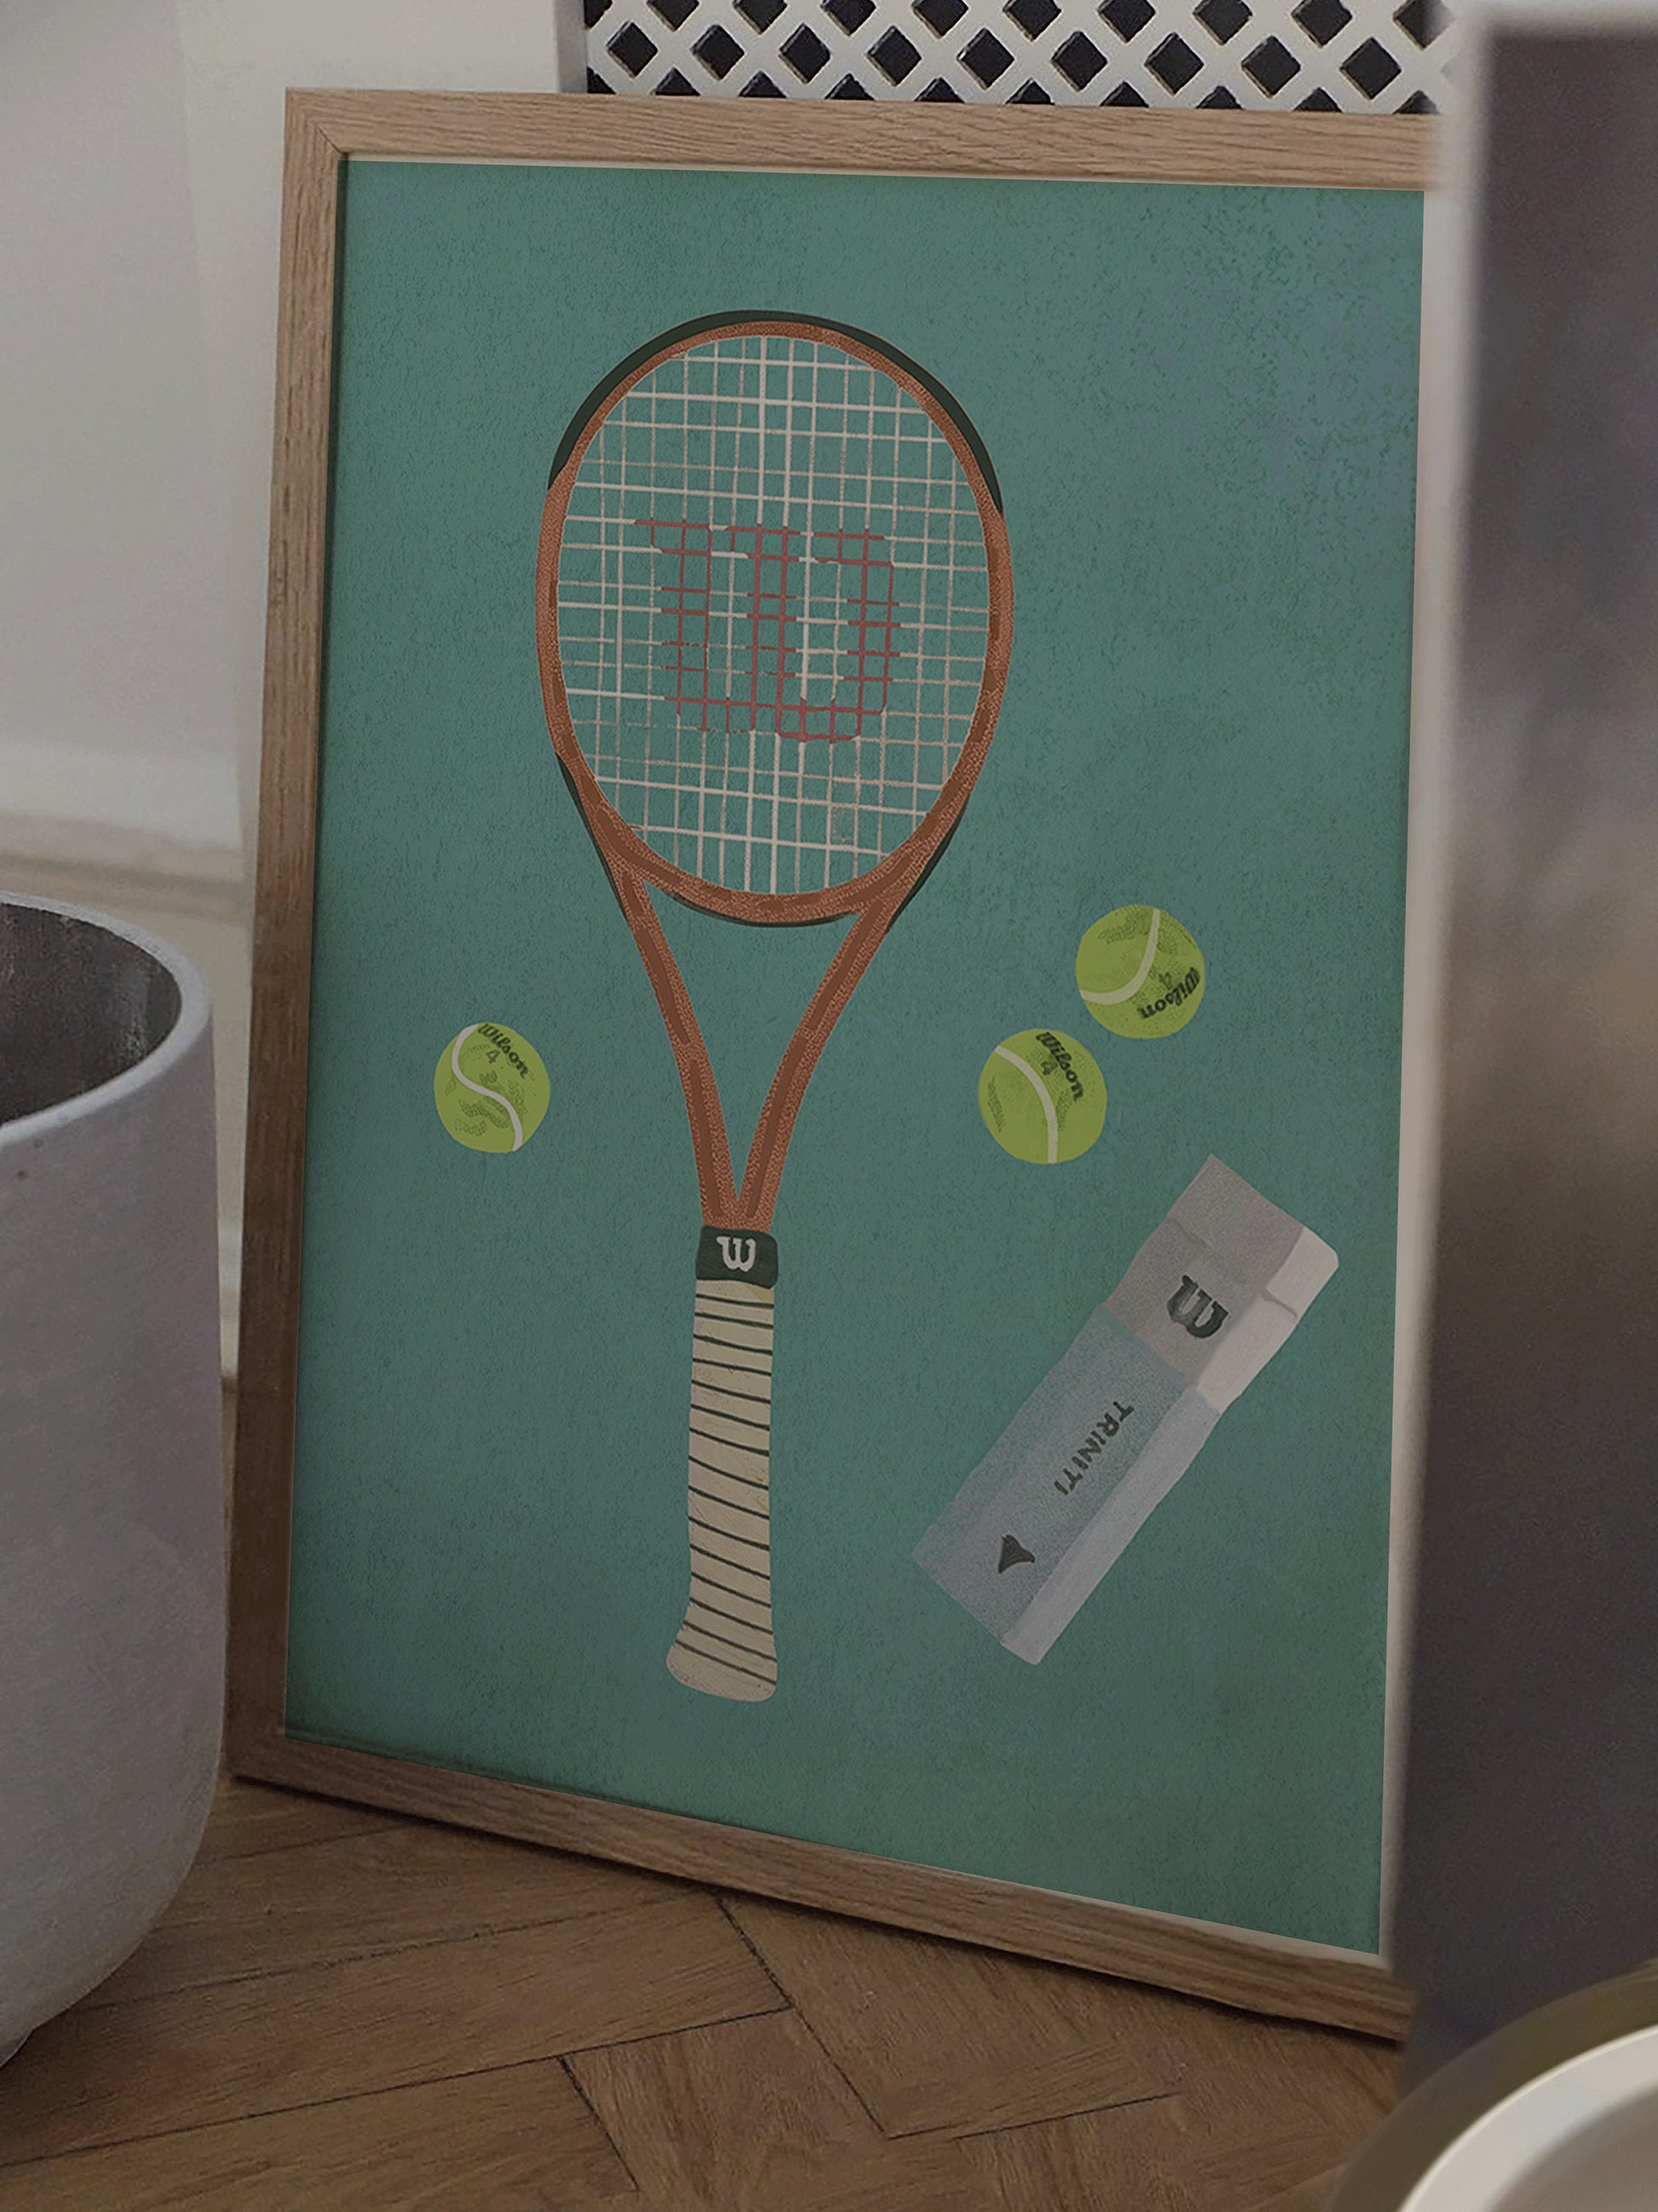 Wilson tennis racket poster